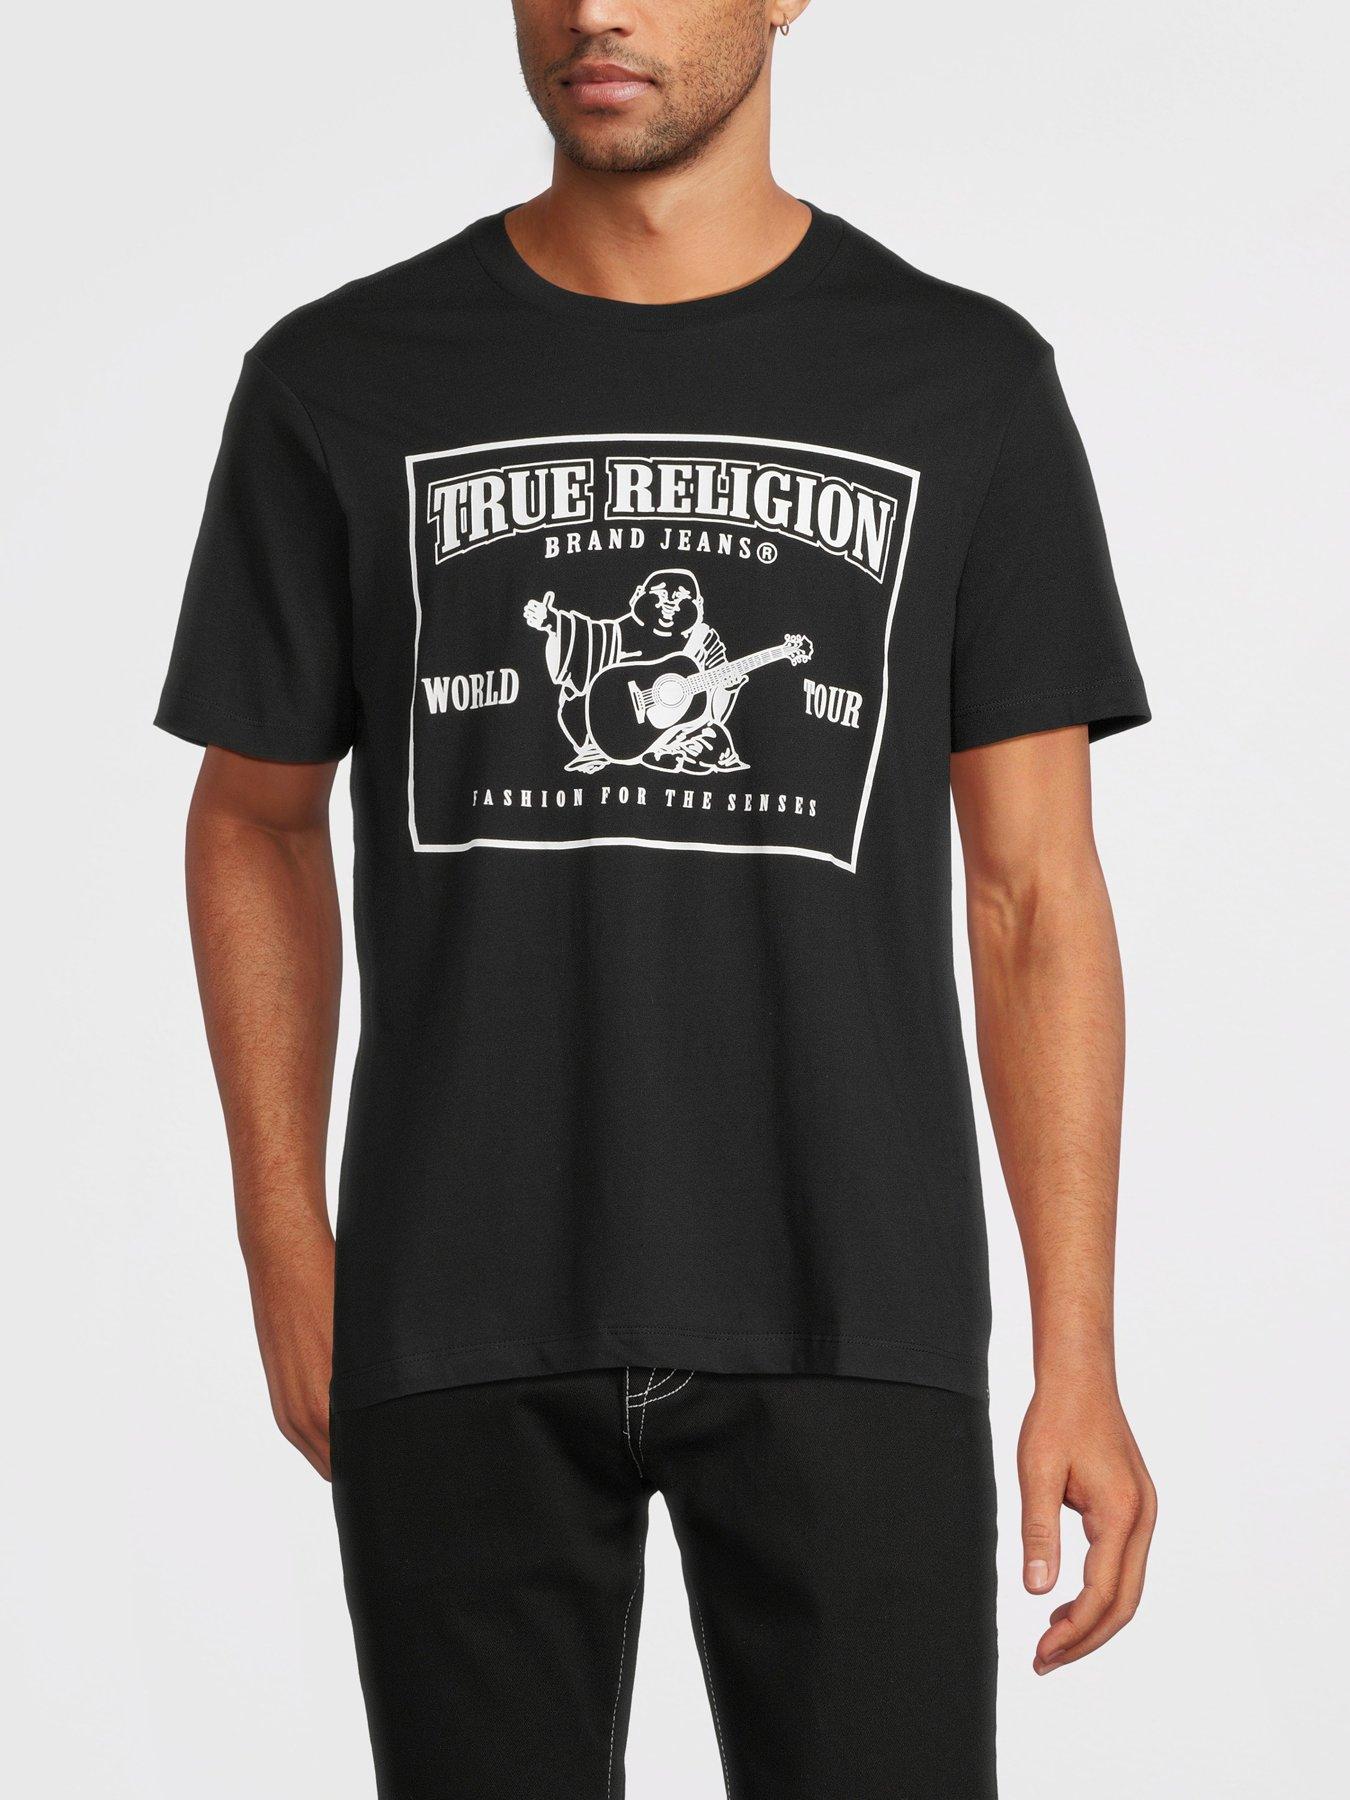 True Religion Men's 4-Pack V Neck Tees, Premium Cotton, White w/Logo,  Large, NEW